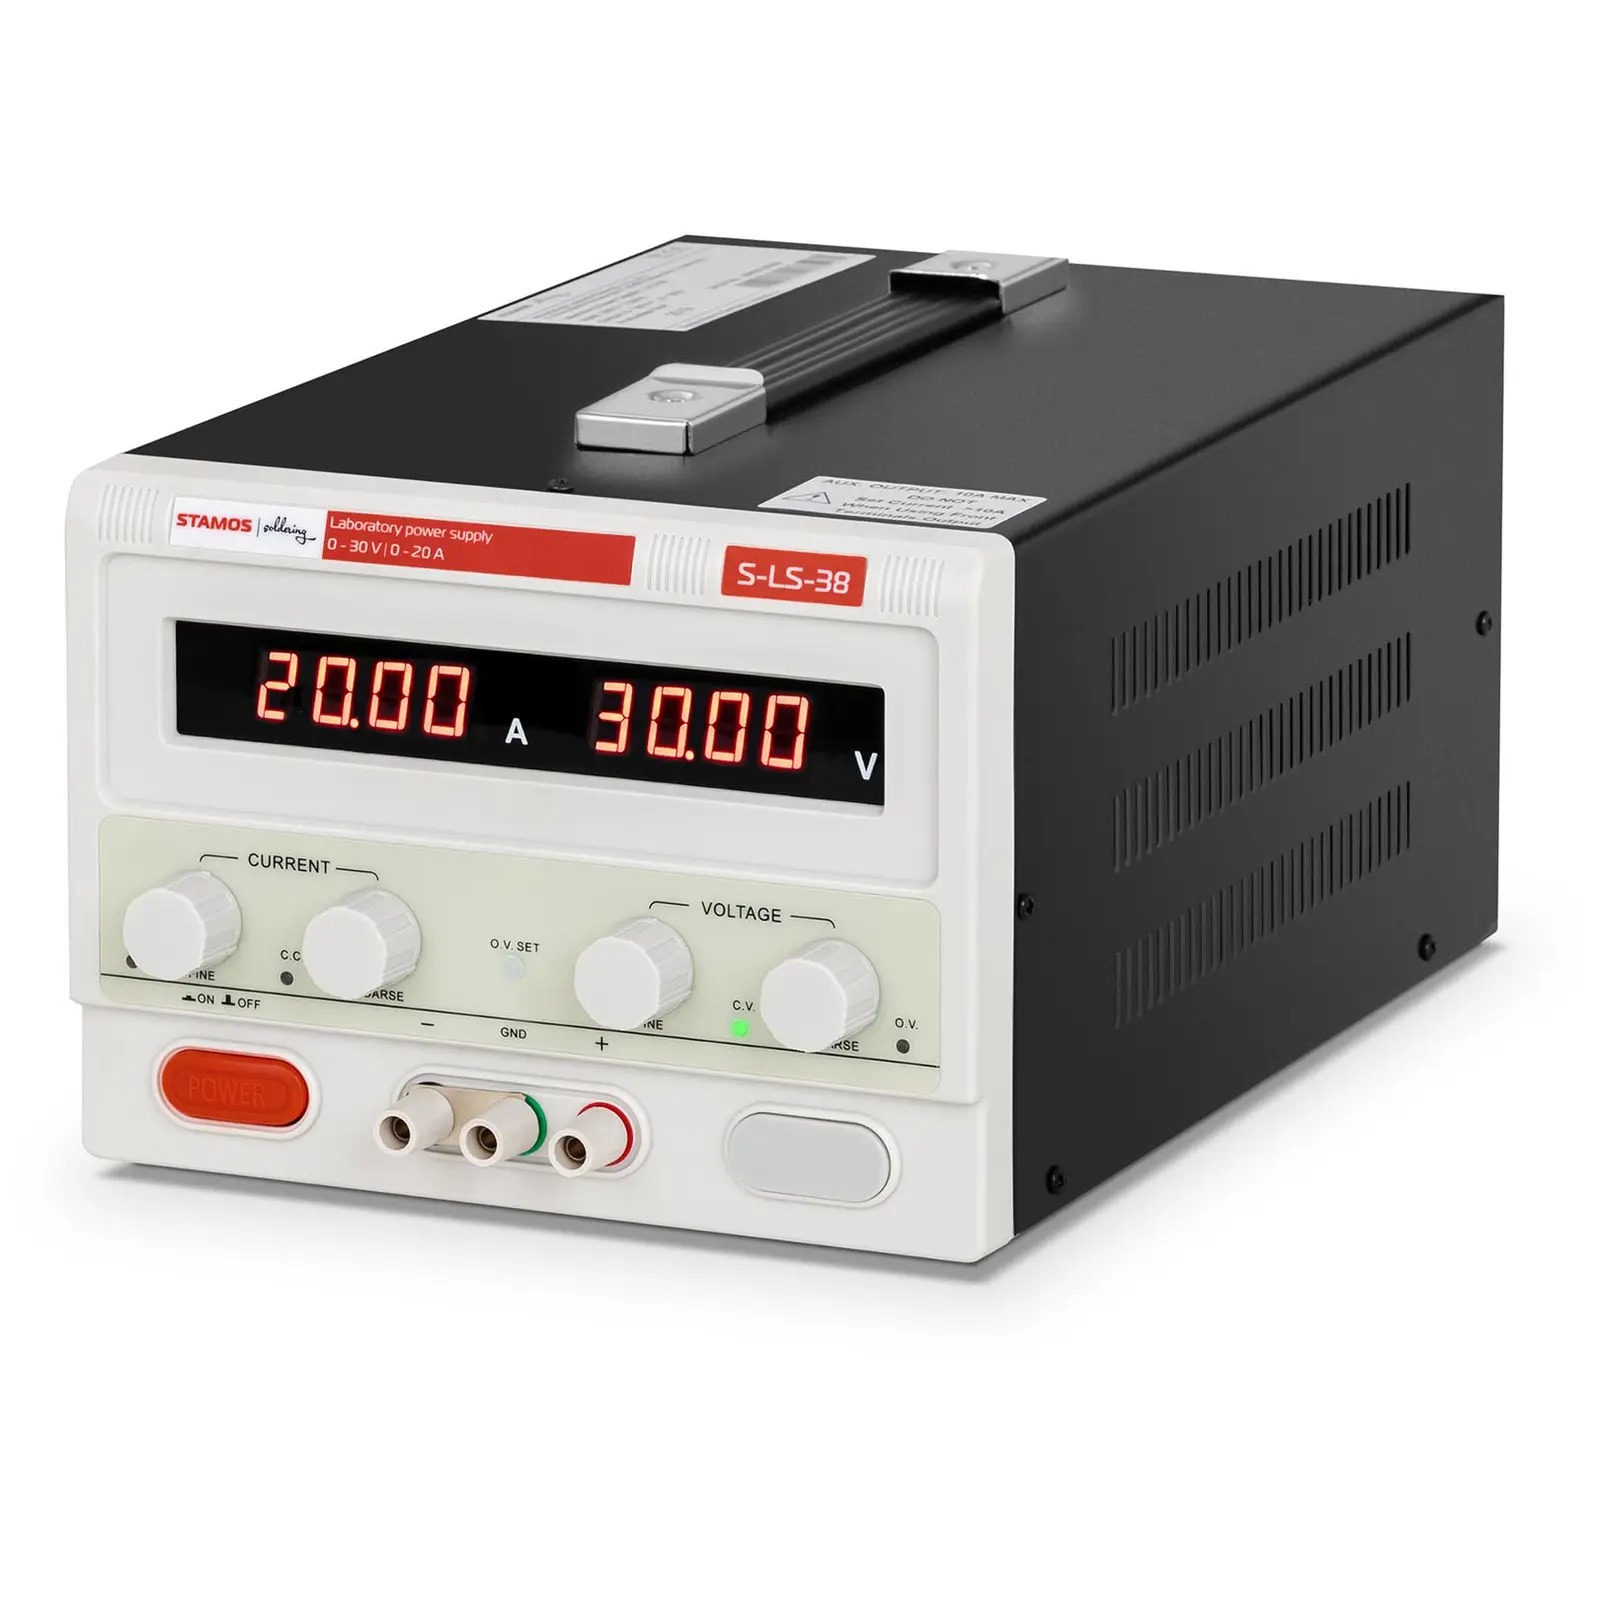 stamos soldering alimentatore da banco - 0-30 v - 0-20 a cc - 600 w, rosso